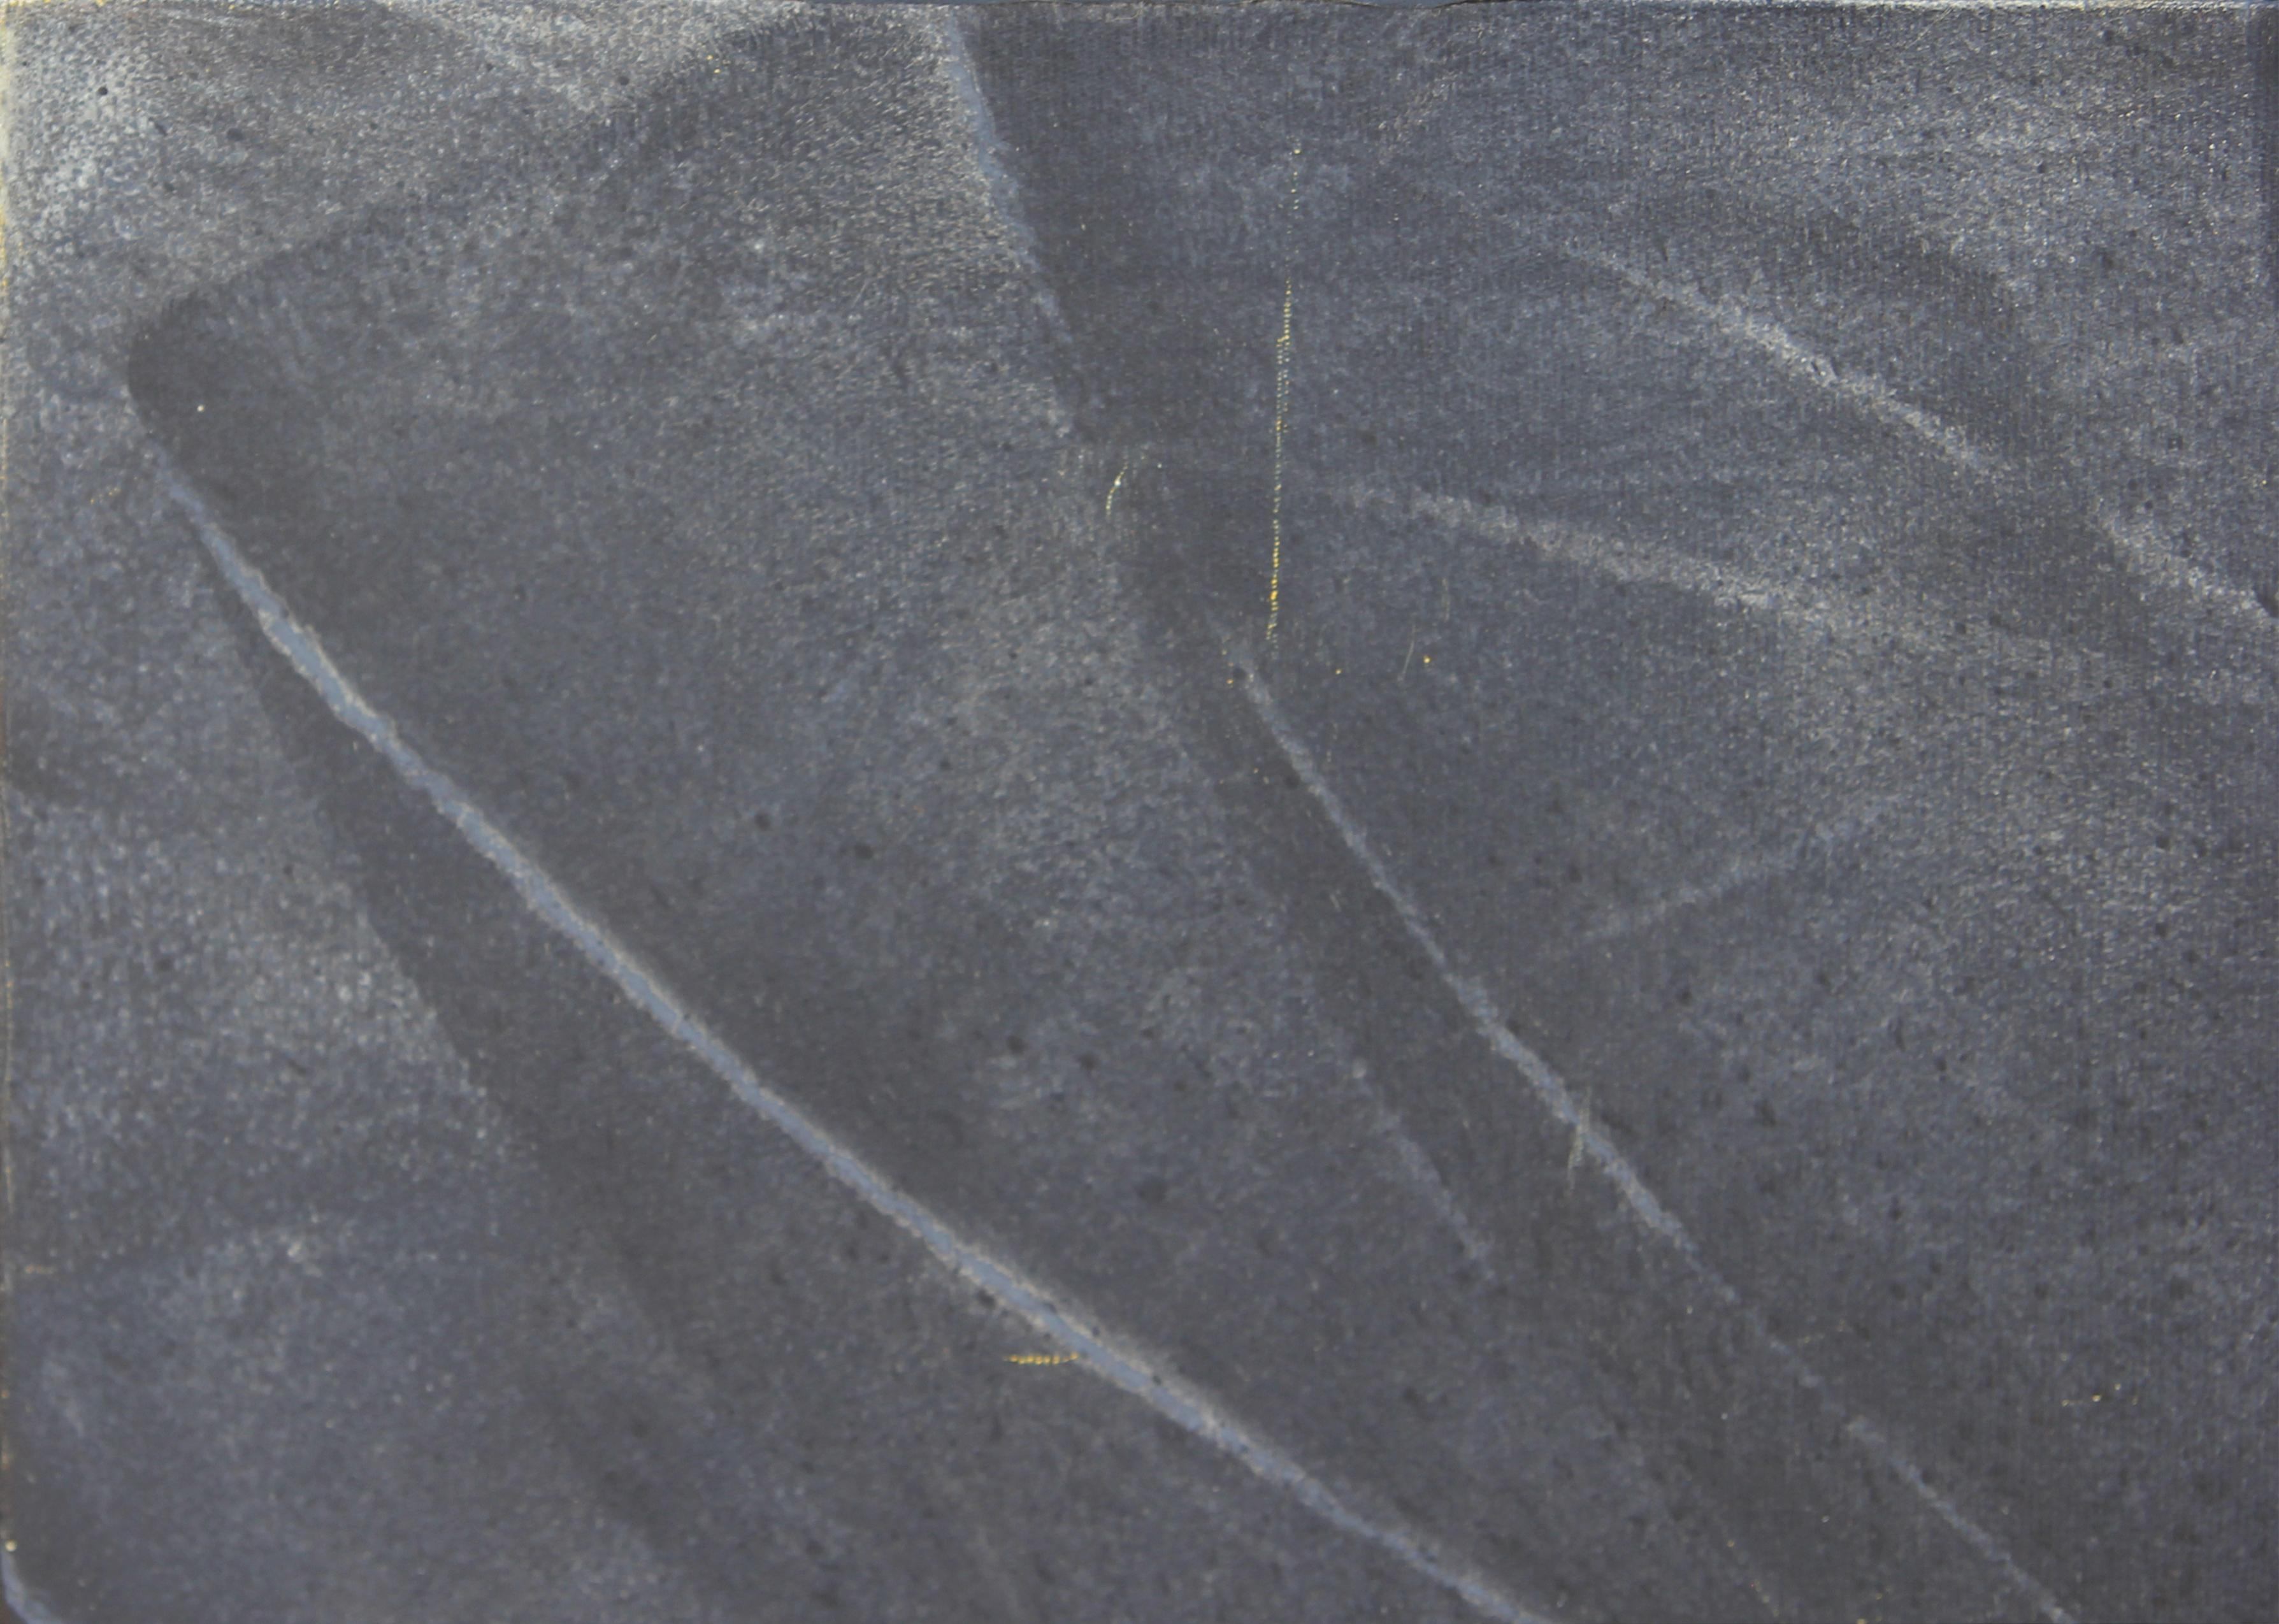 Peinture moderne abstraite de couleur noire et grise, dans le style de Mark Rothko. - Colorfield Painting par (after) Mark Rothko